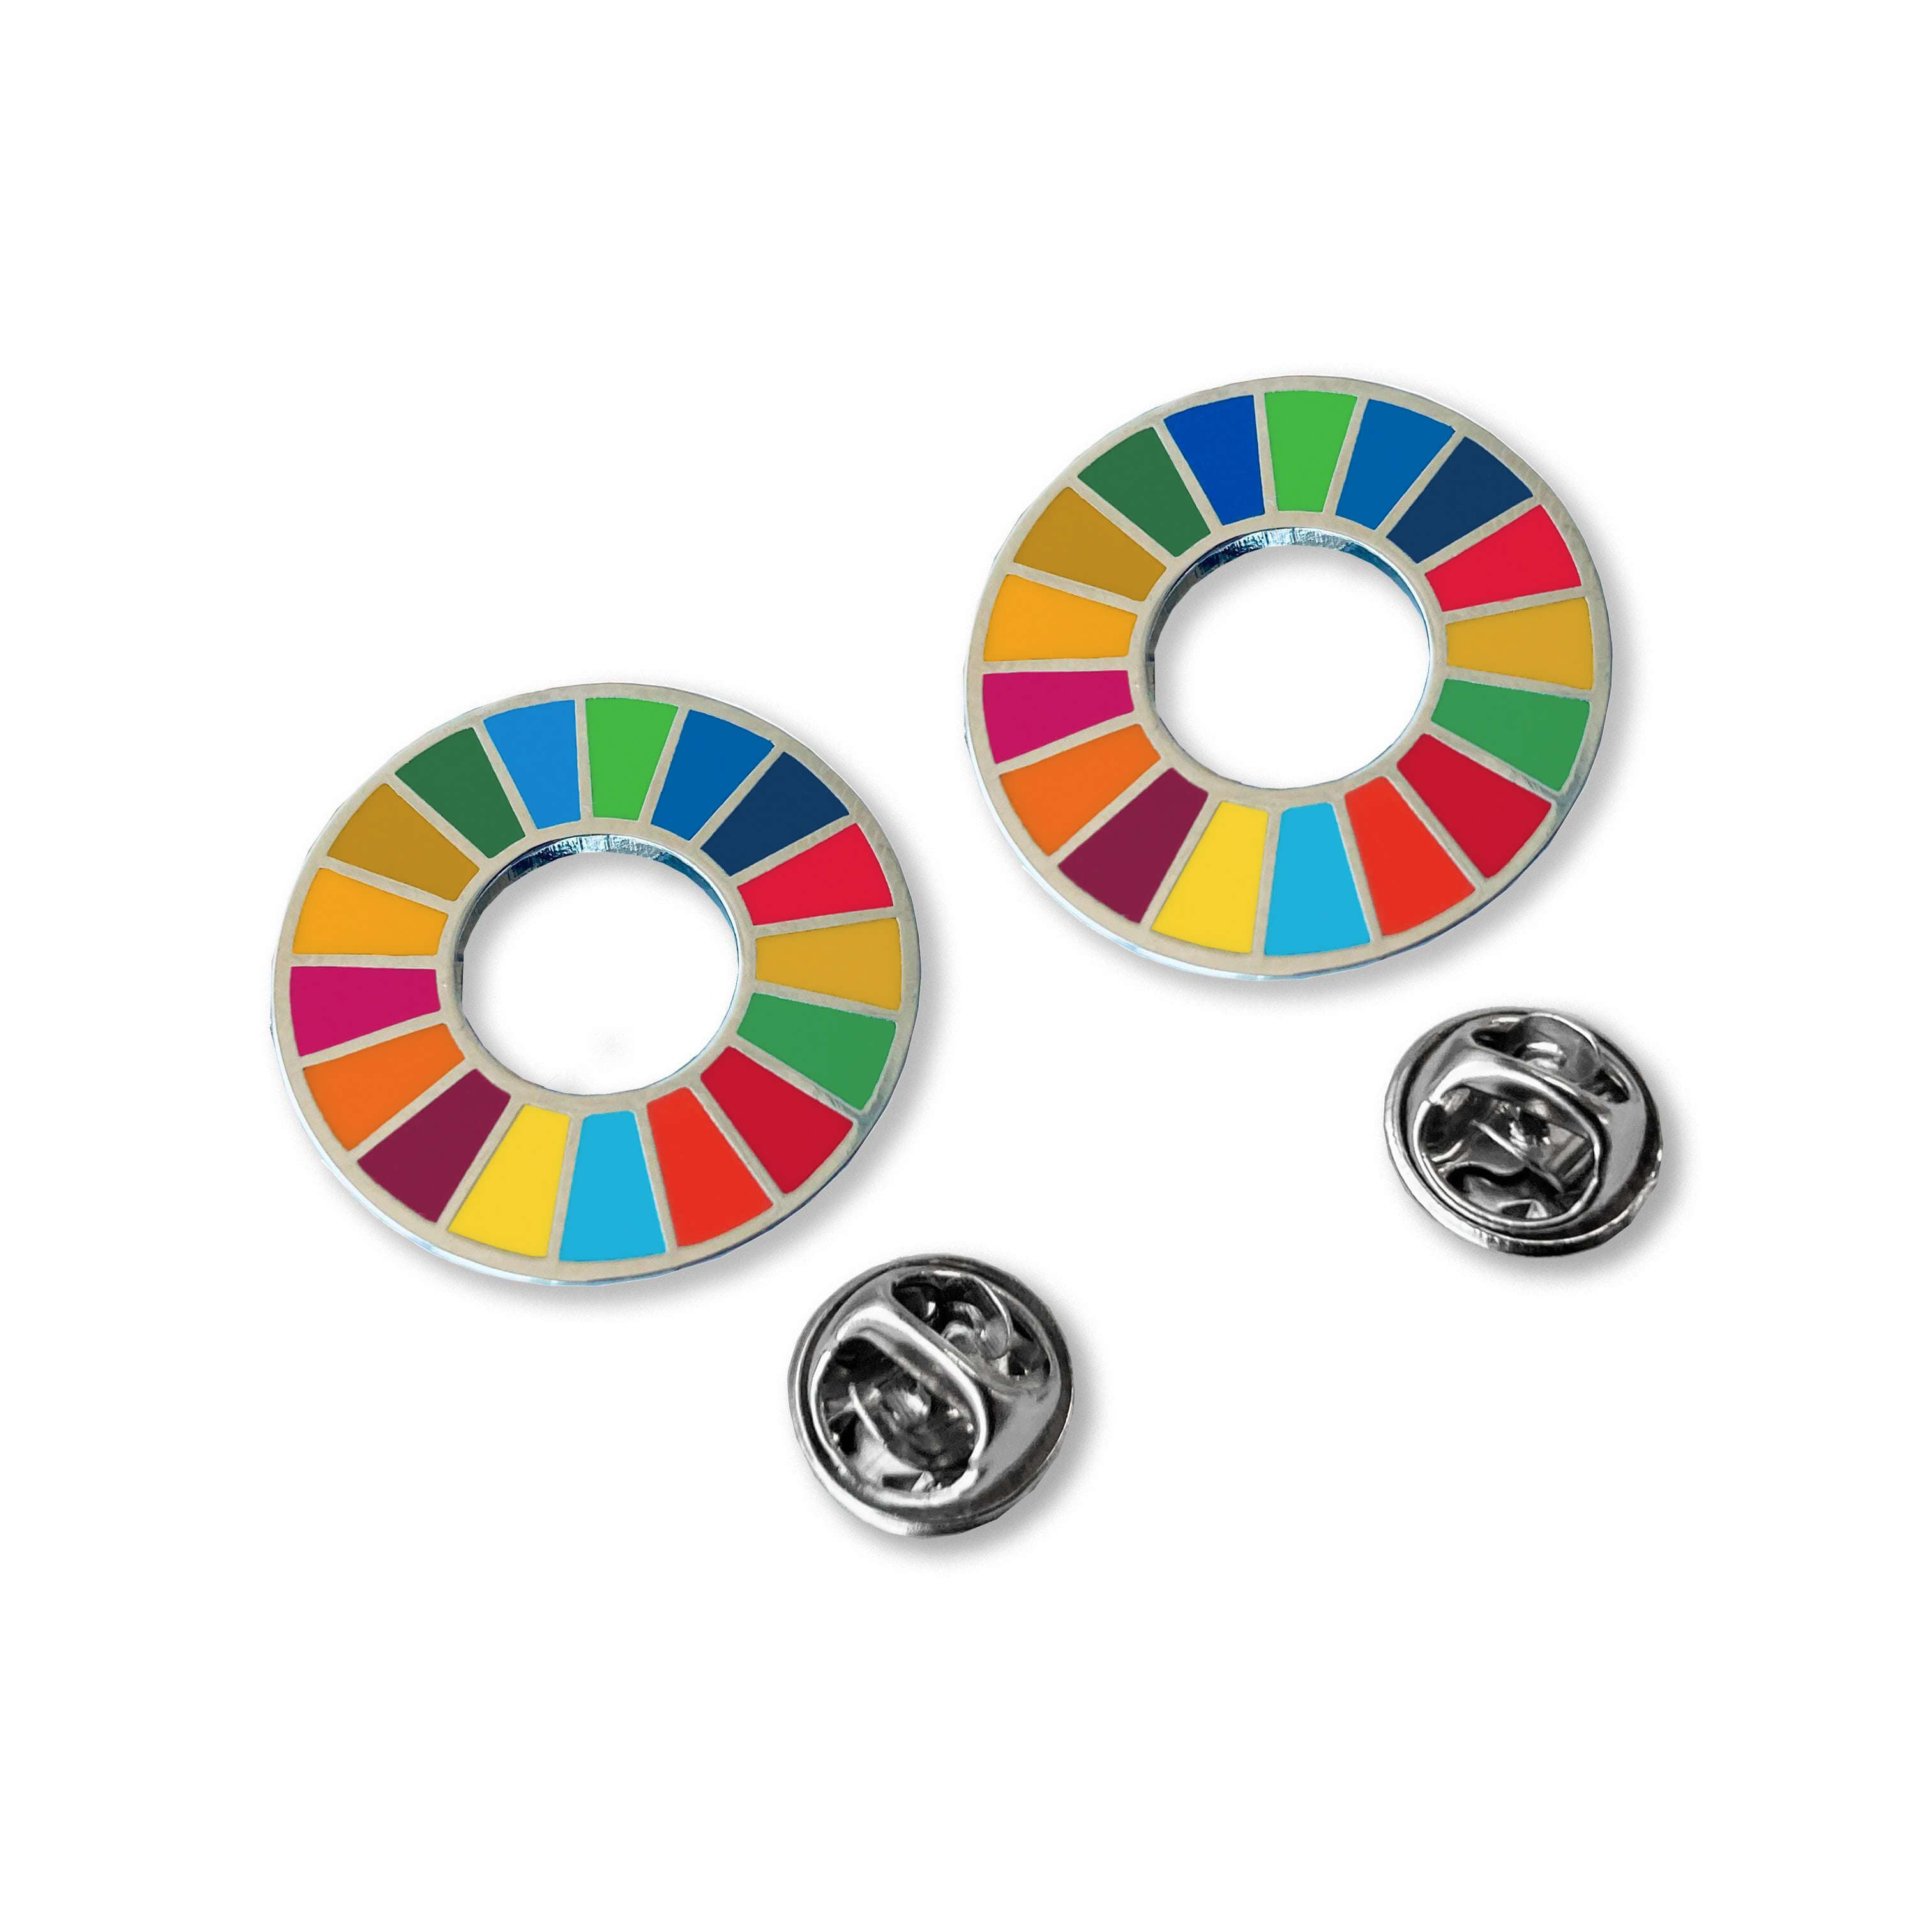 Buy Official Sdgs Lapel Pins Online (Set of Two) | UNDP Shop